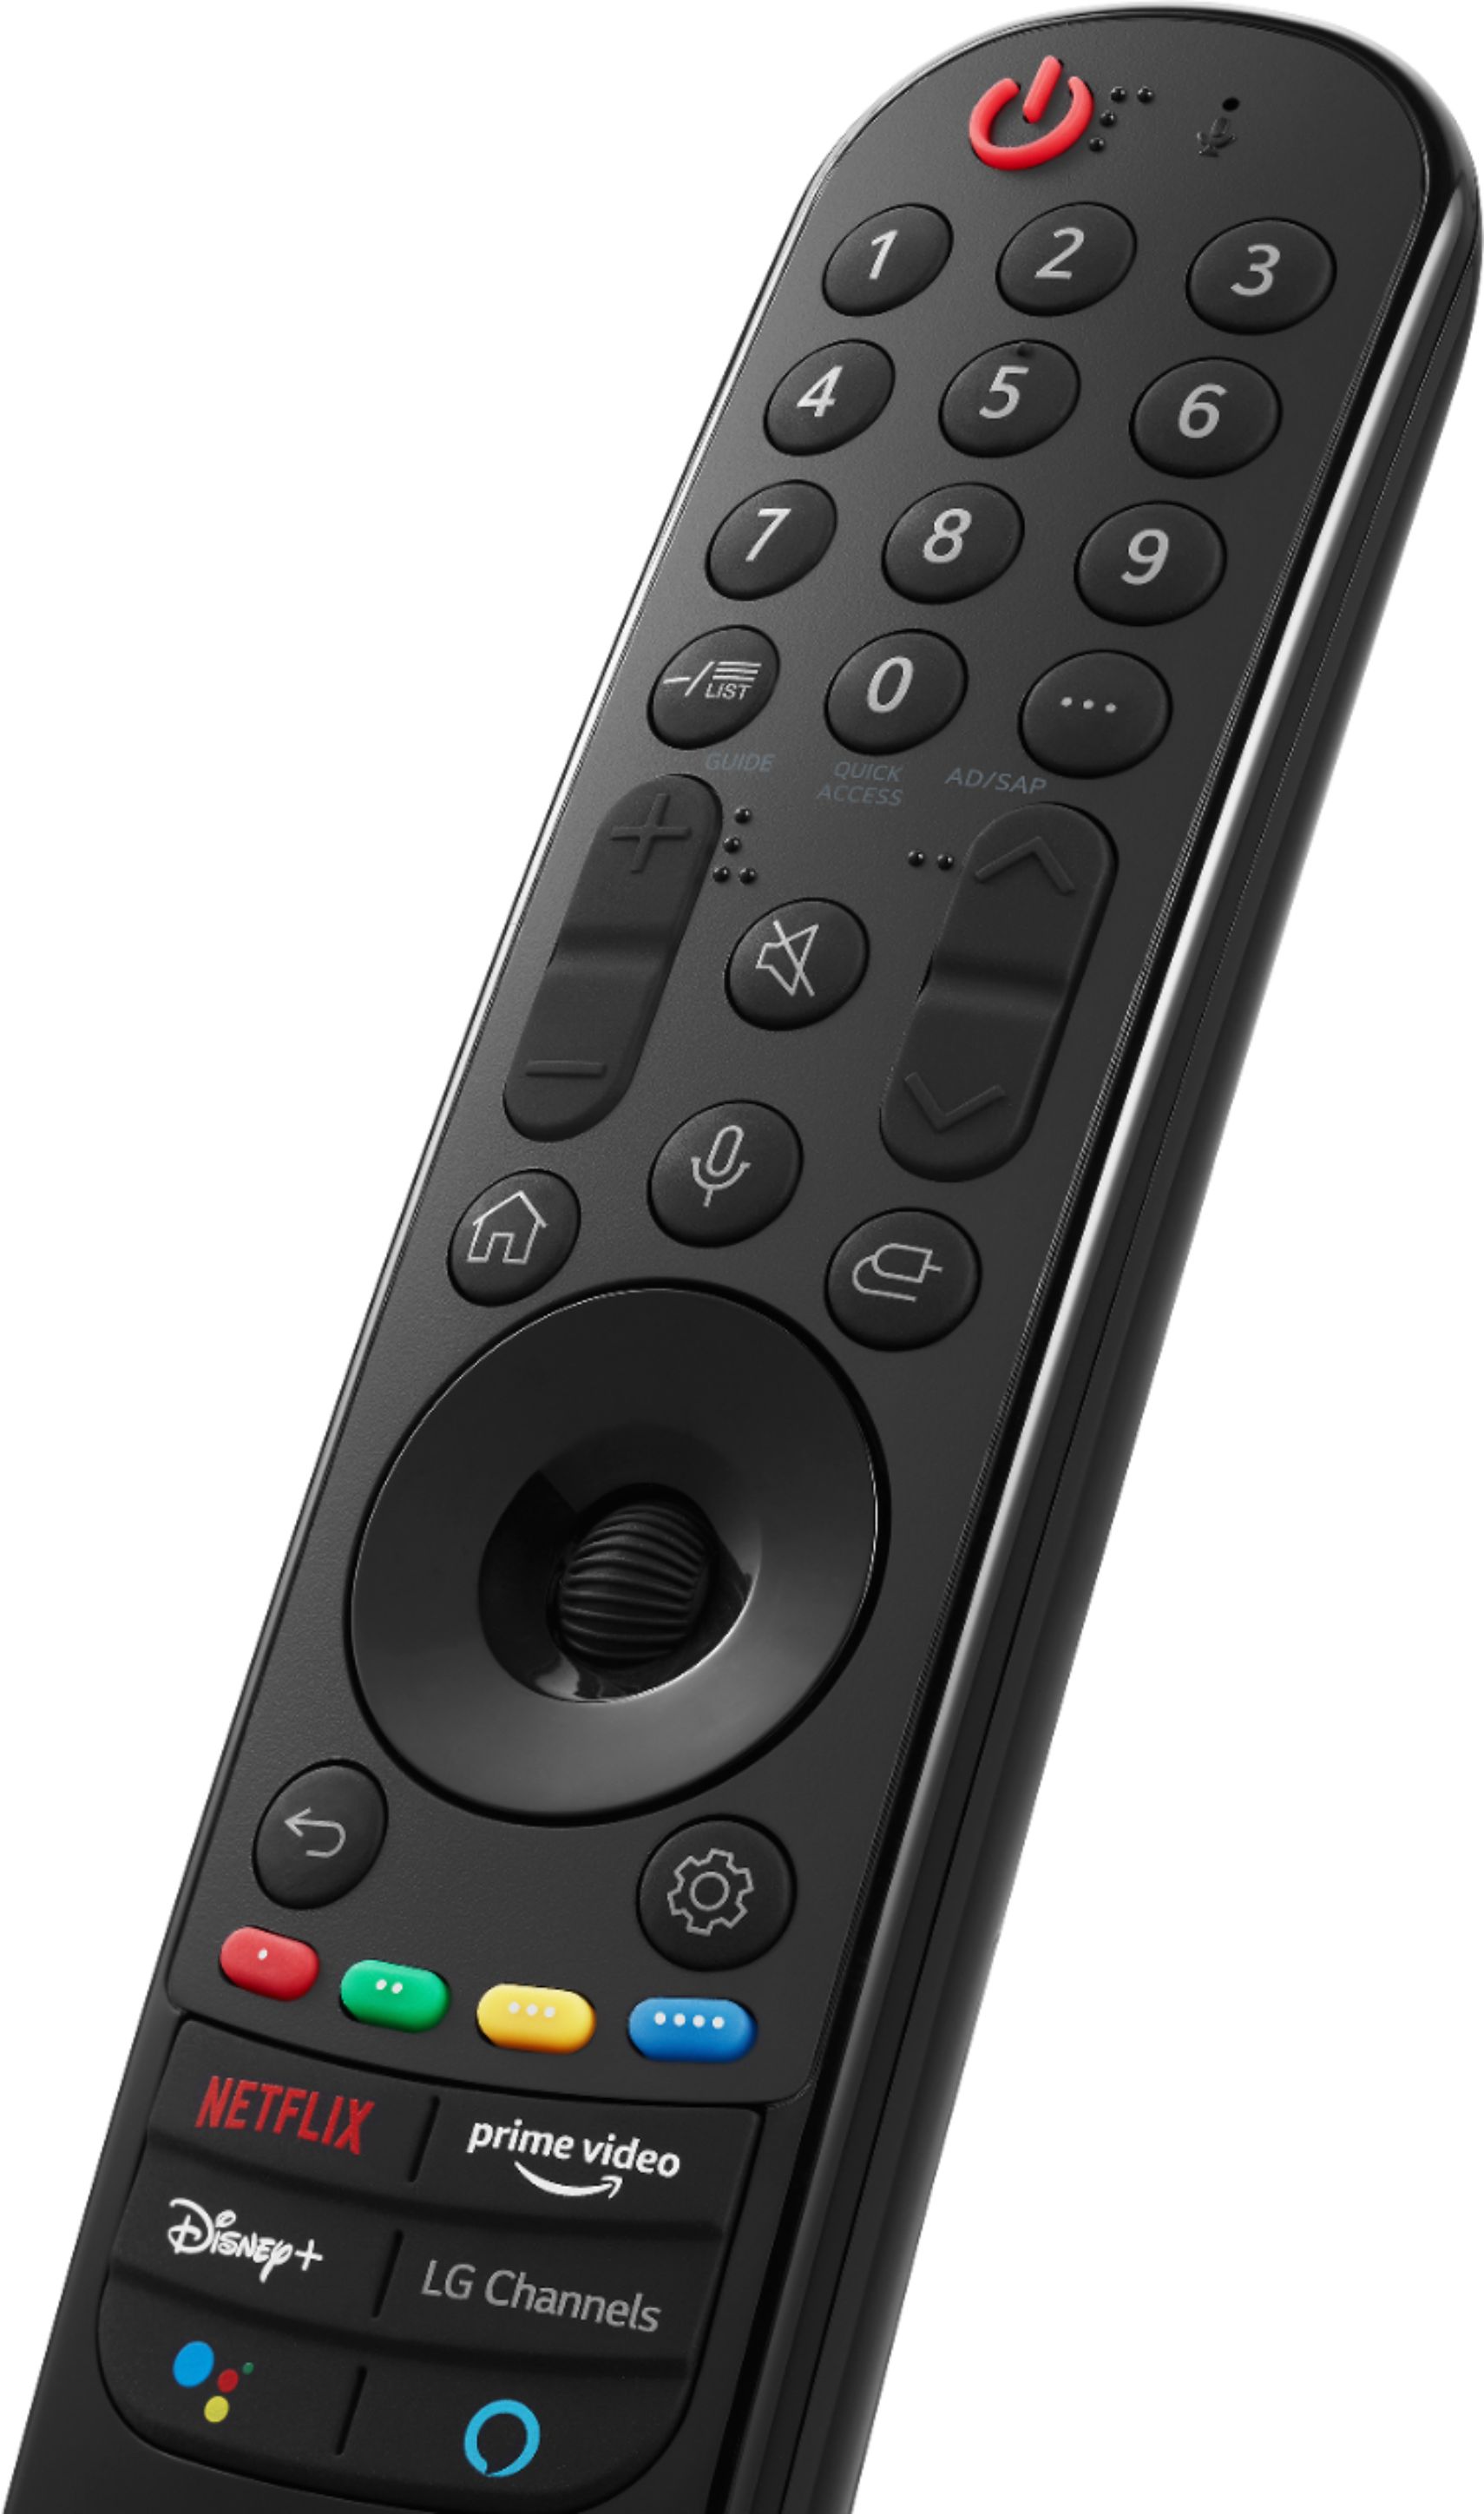 Efeeme - Las mejores ofertas esta en FMSTORE ! Televisor Smart TV LG 60  pulgadas 4K con Magic control Antes $2400 — Precio oferta $1199